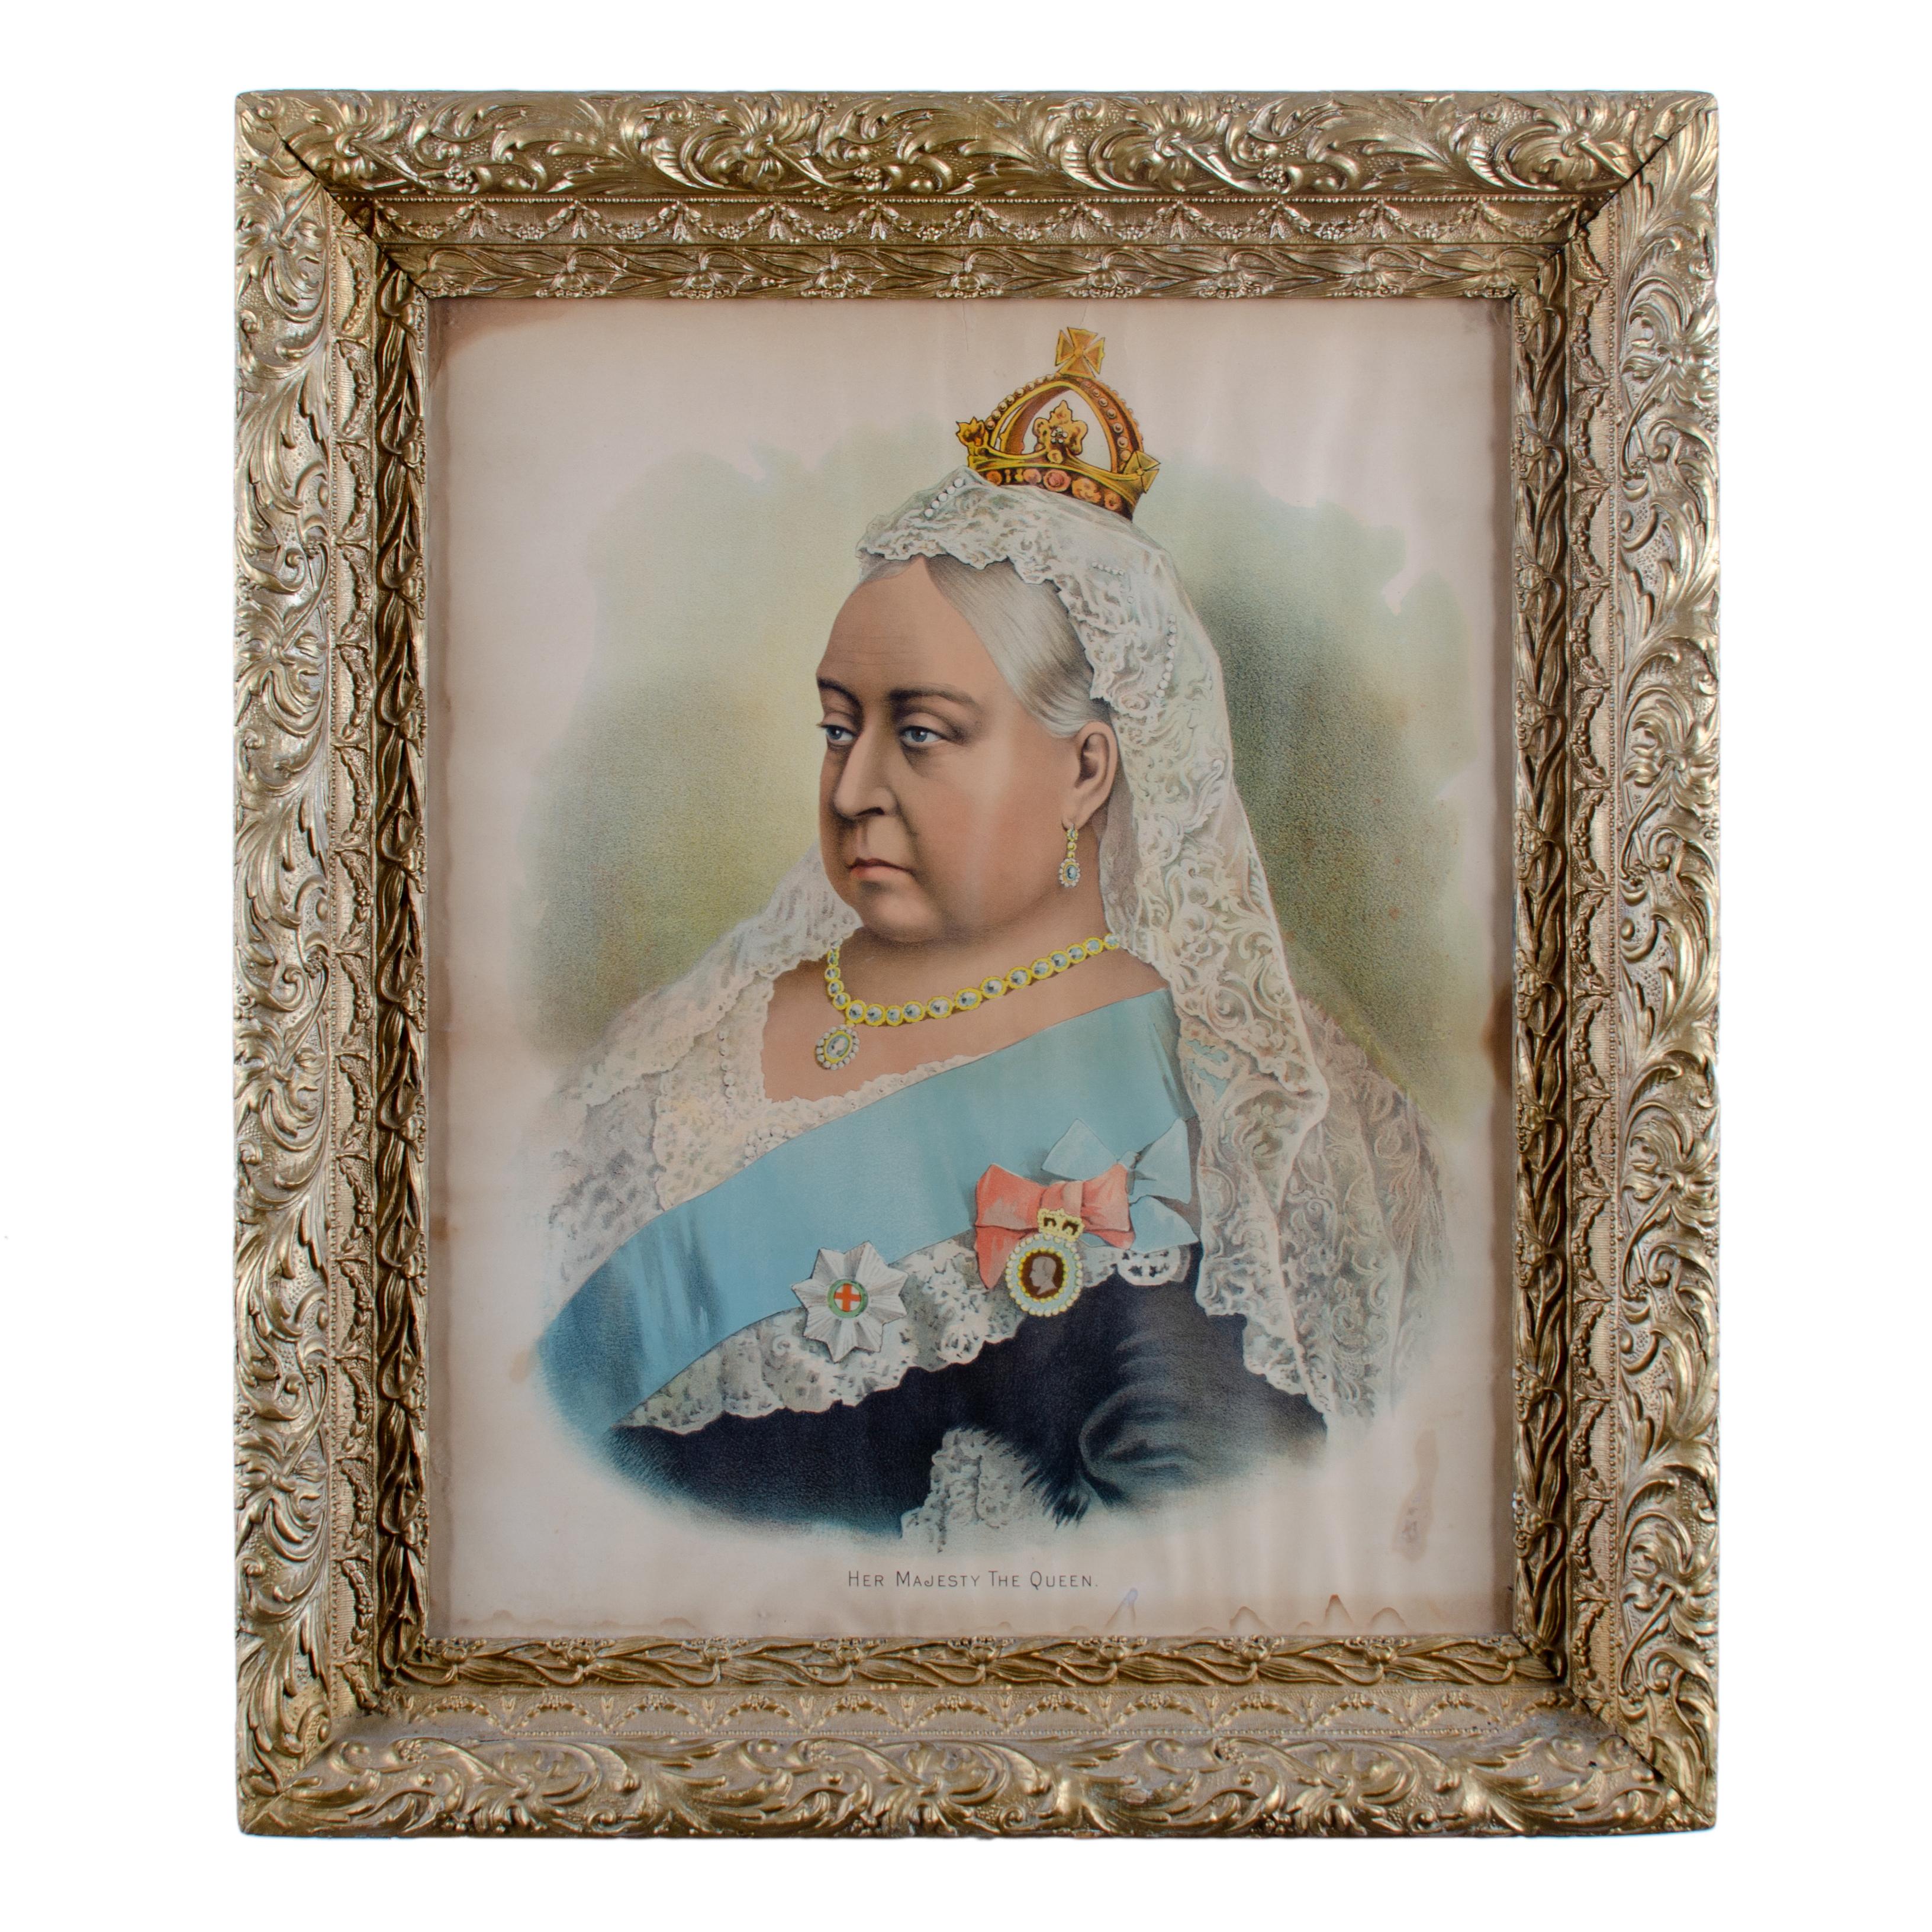 Eine seltene Lithographie eines Porträts von Königin Victoria in ihren späten Jahren, mit dem Titel 